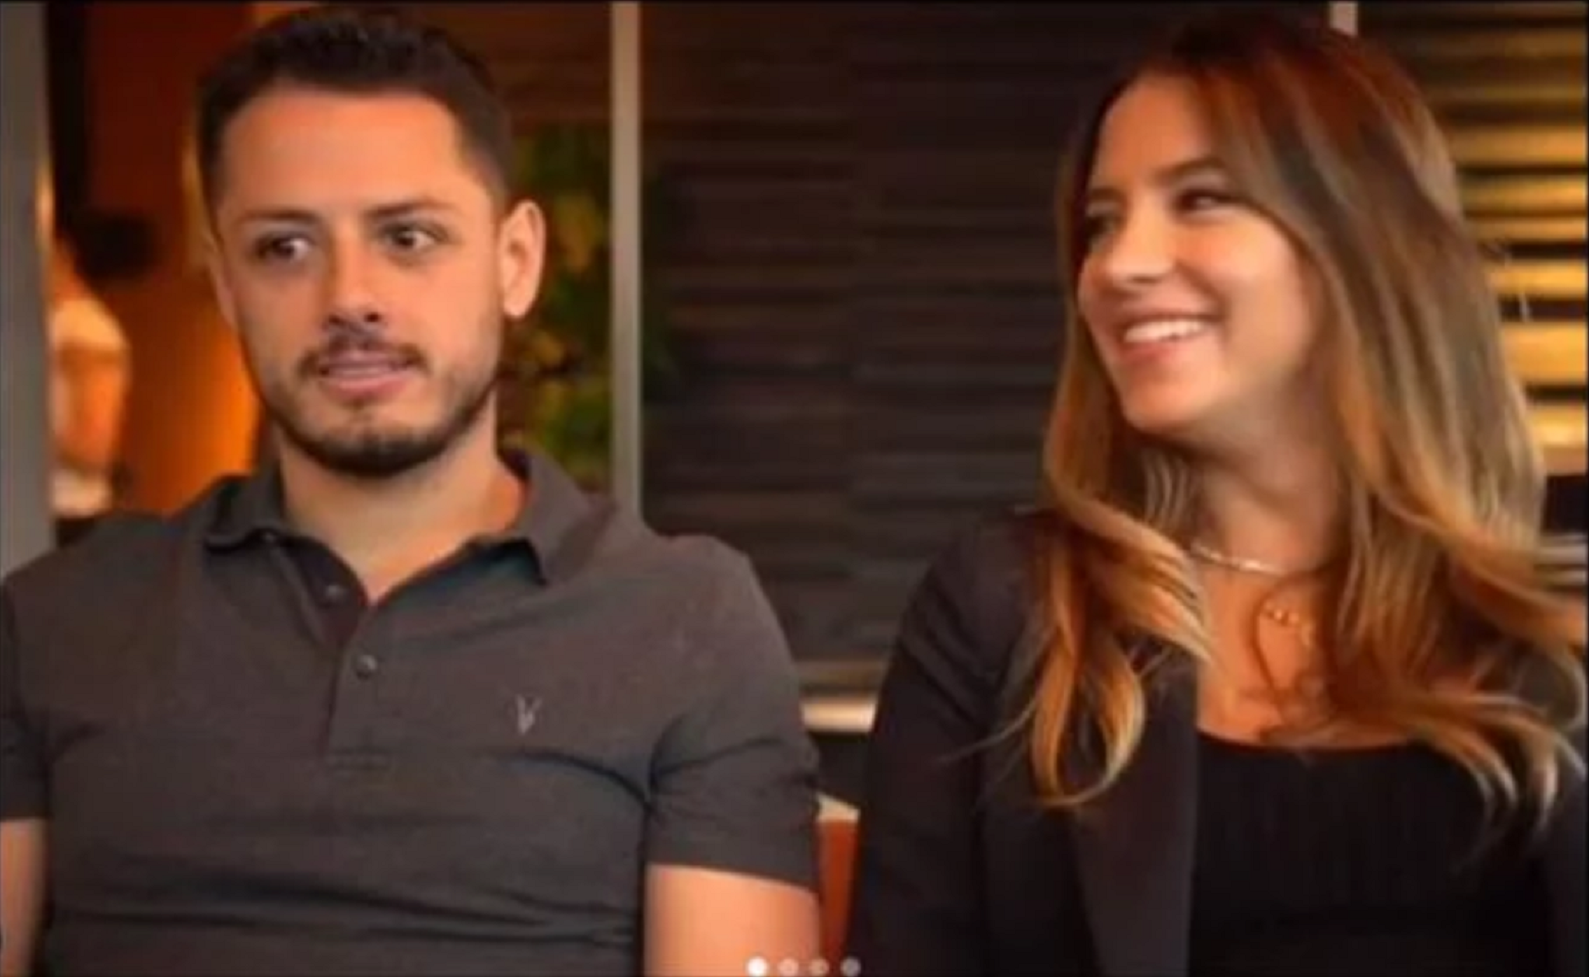 El futbolista mexicano, Javier Hernández, anunció a través de sus redes sociales que está esperando un hijo junto a su pareja, la modelo Sara Kohan